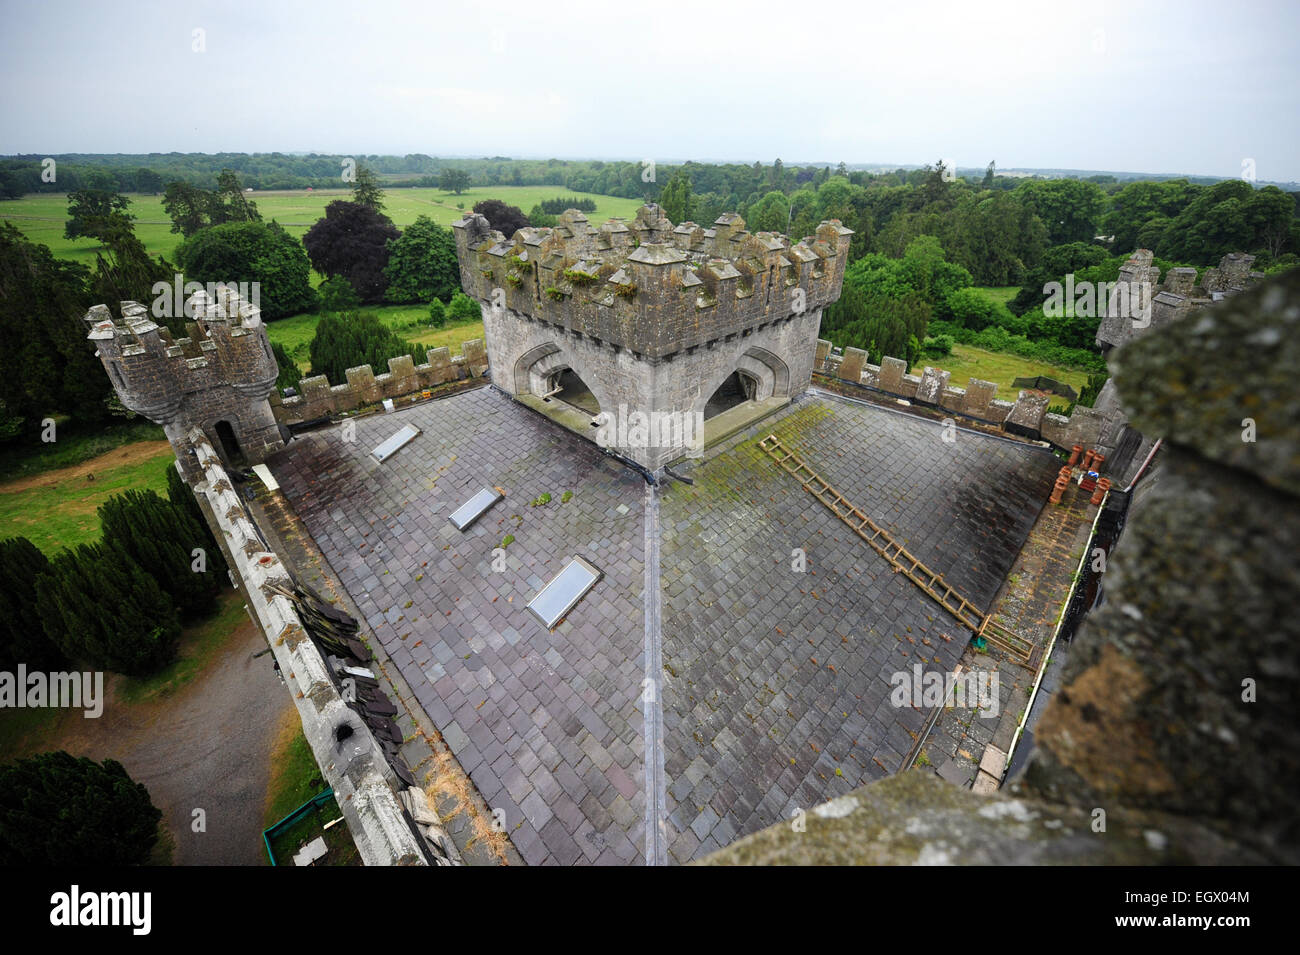 Il principale sul tetto del castello di Charleville, Tullamore, Co Offaly, Irlanda. Fotografia: James Flynn/Alamy Foto Stock